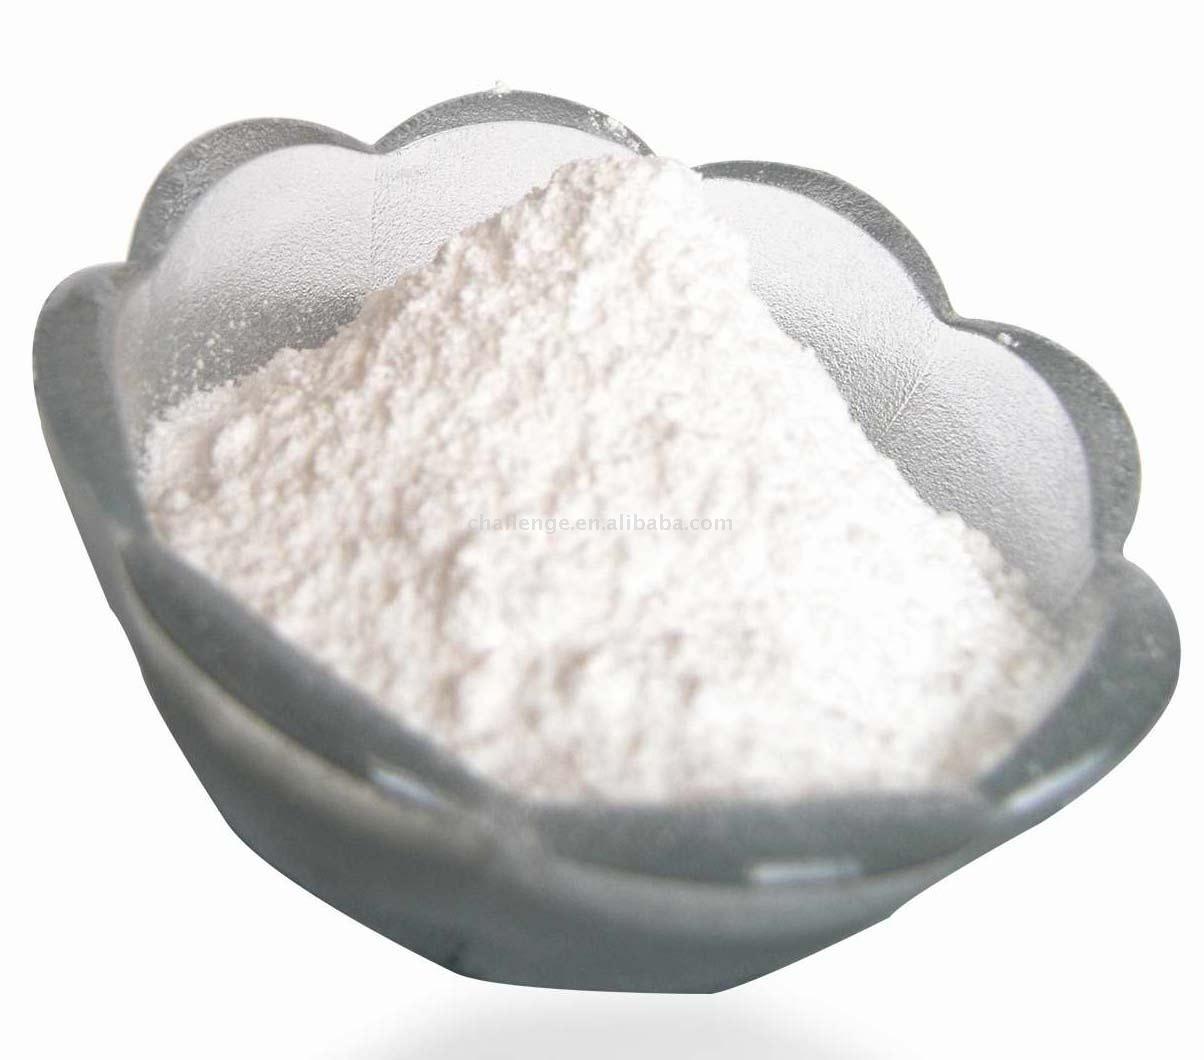  Sodium Butyrate (Натрий Butyrate)